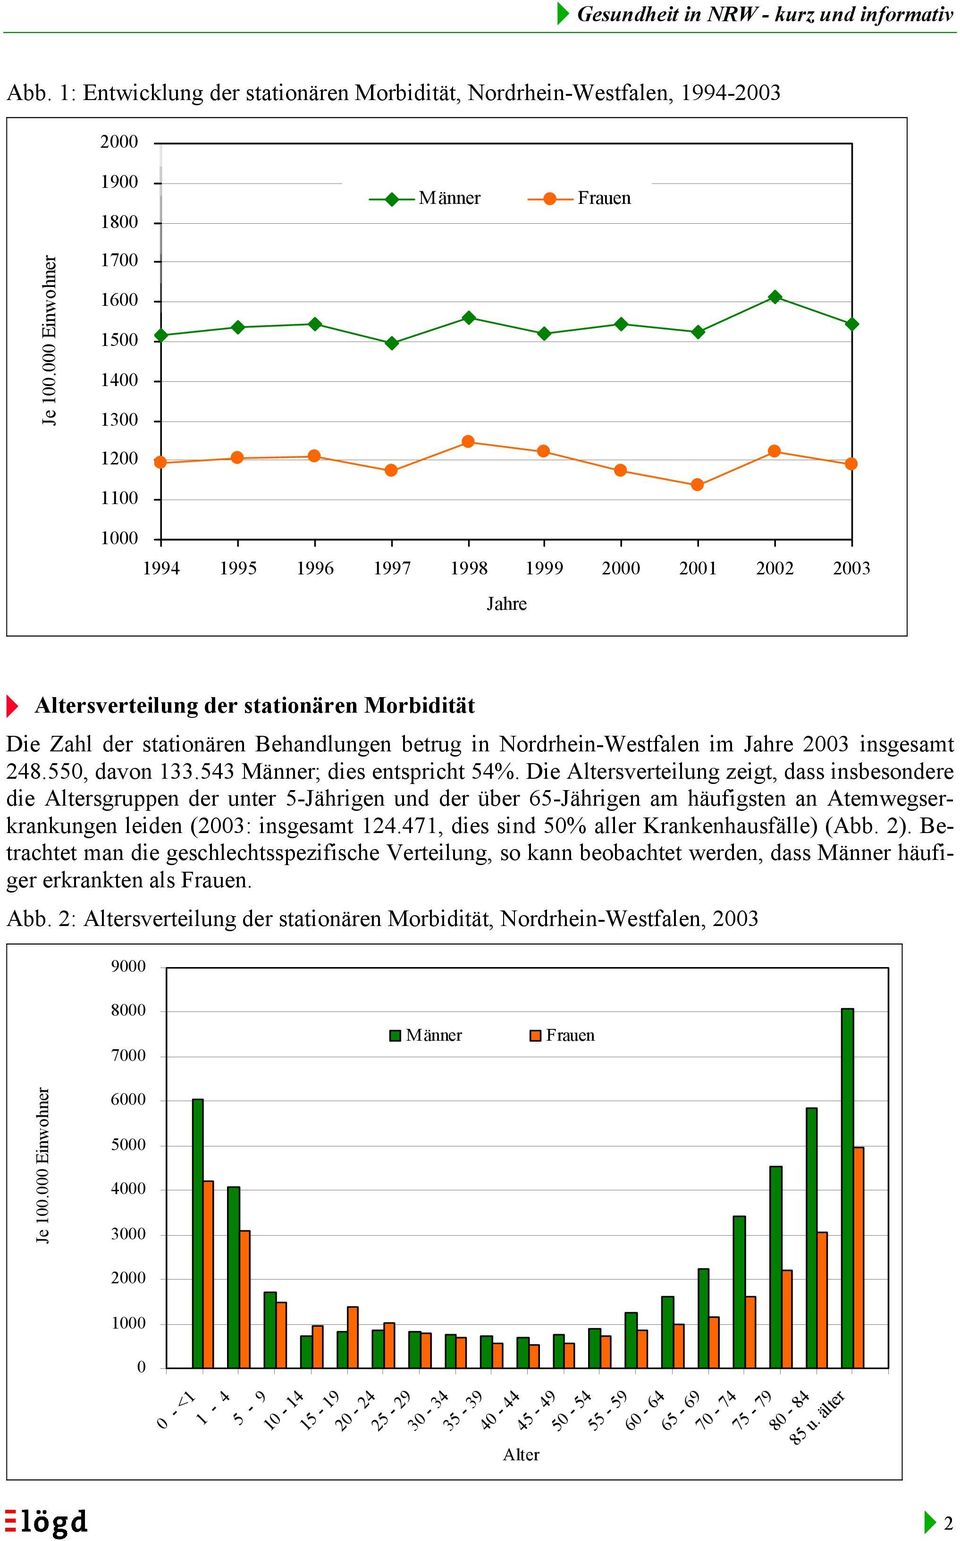 in Nordrhein-Westfalen im Jahre 2003 insgesamt 248.550, davon 133.543 ; dies entspricht 54%.